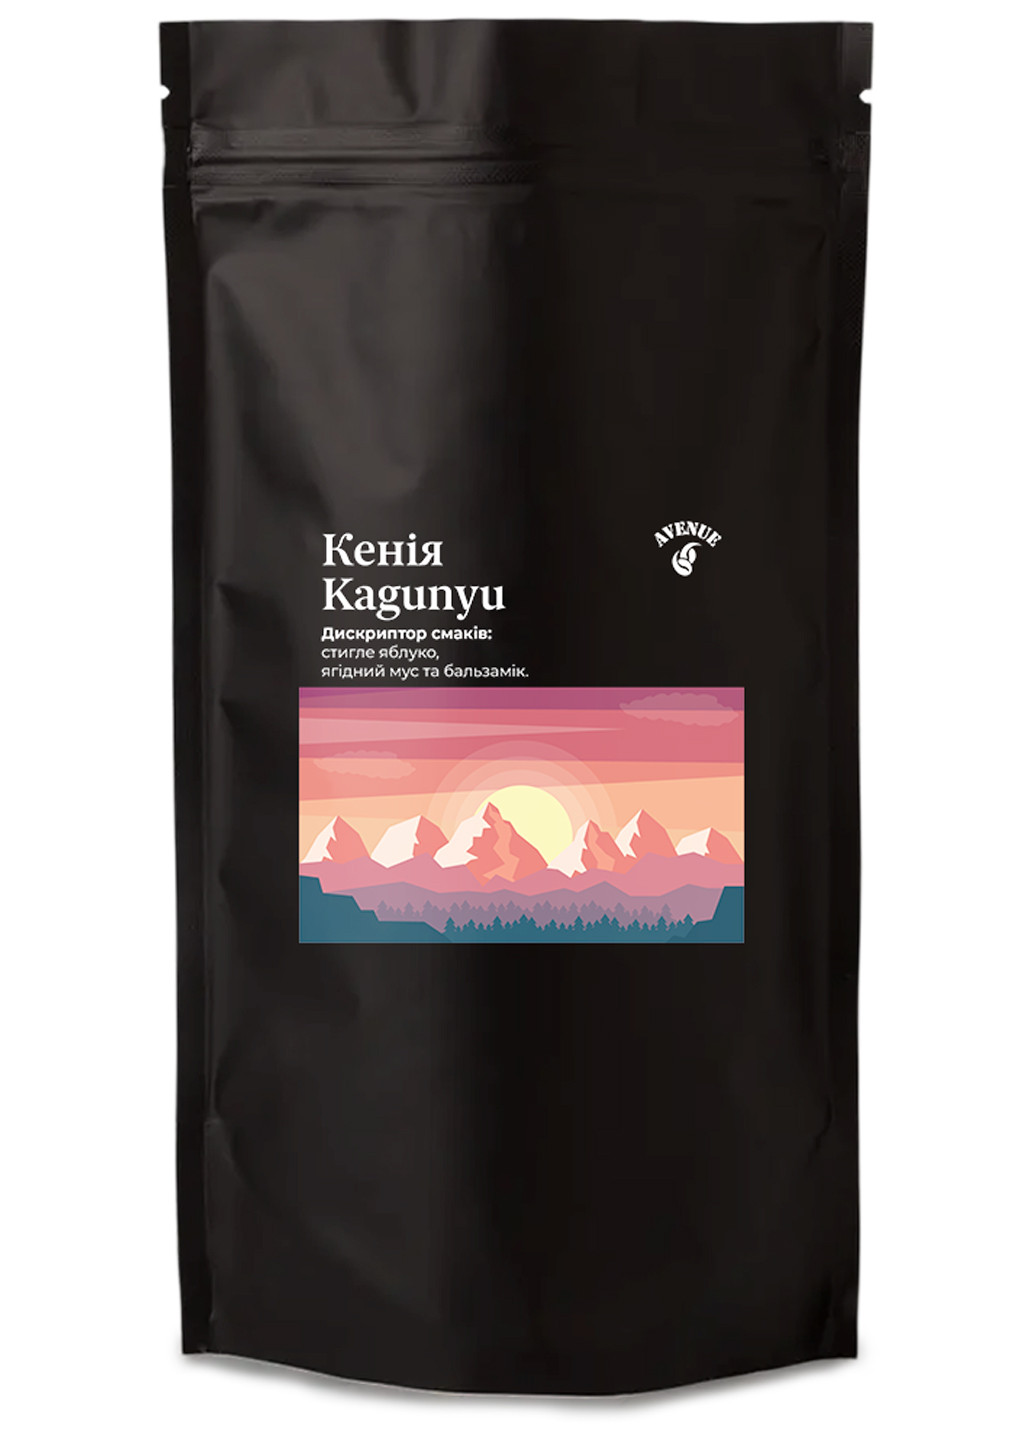 Кофе Кения Kagunyu 100% Арабика в зернах свежеобжаренный 200г Avenue 66 (276003219)